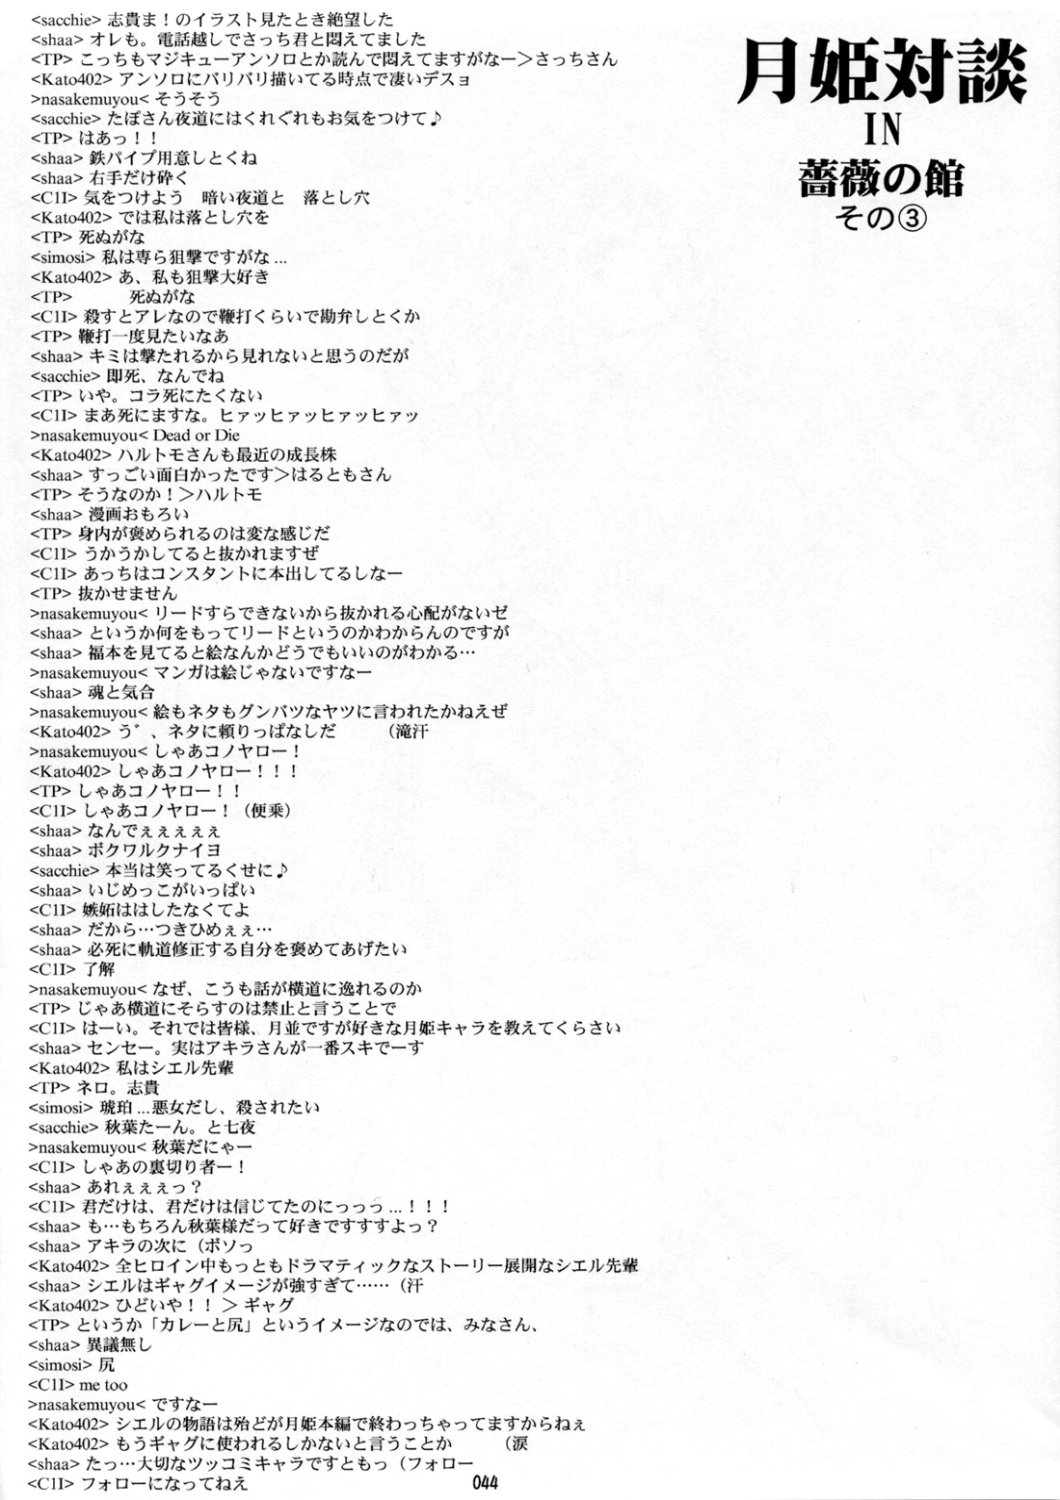 [Inochi no Furusato, Neko-bus Tei, Zangyaku Koui Teate] Akihamania [AKIHA MANIACS] (Tsukihime) page 43 full